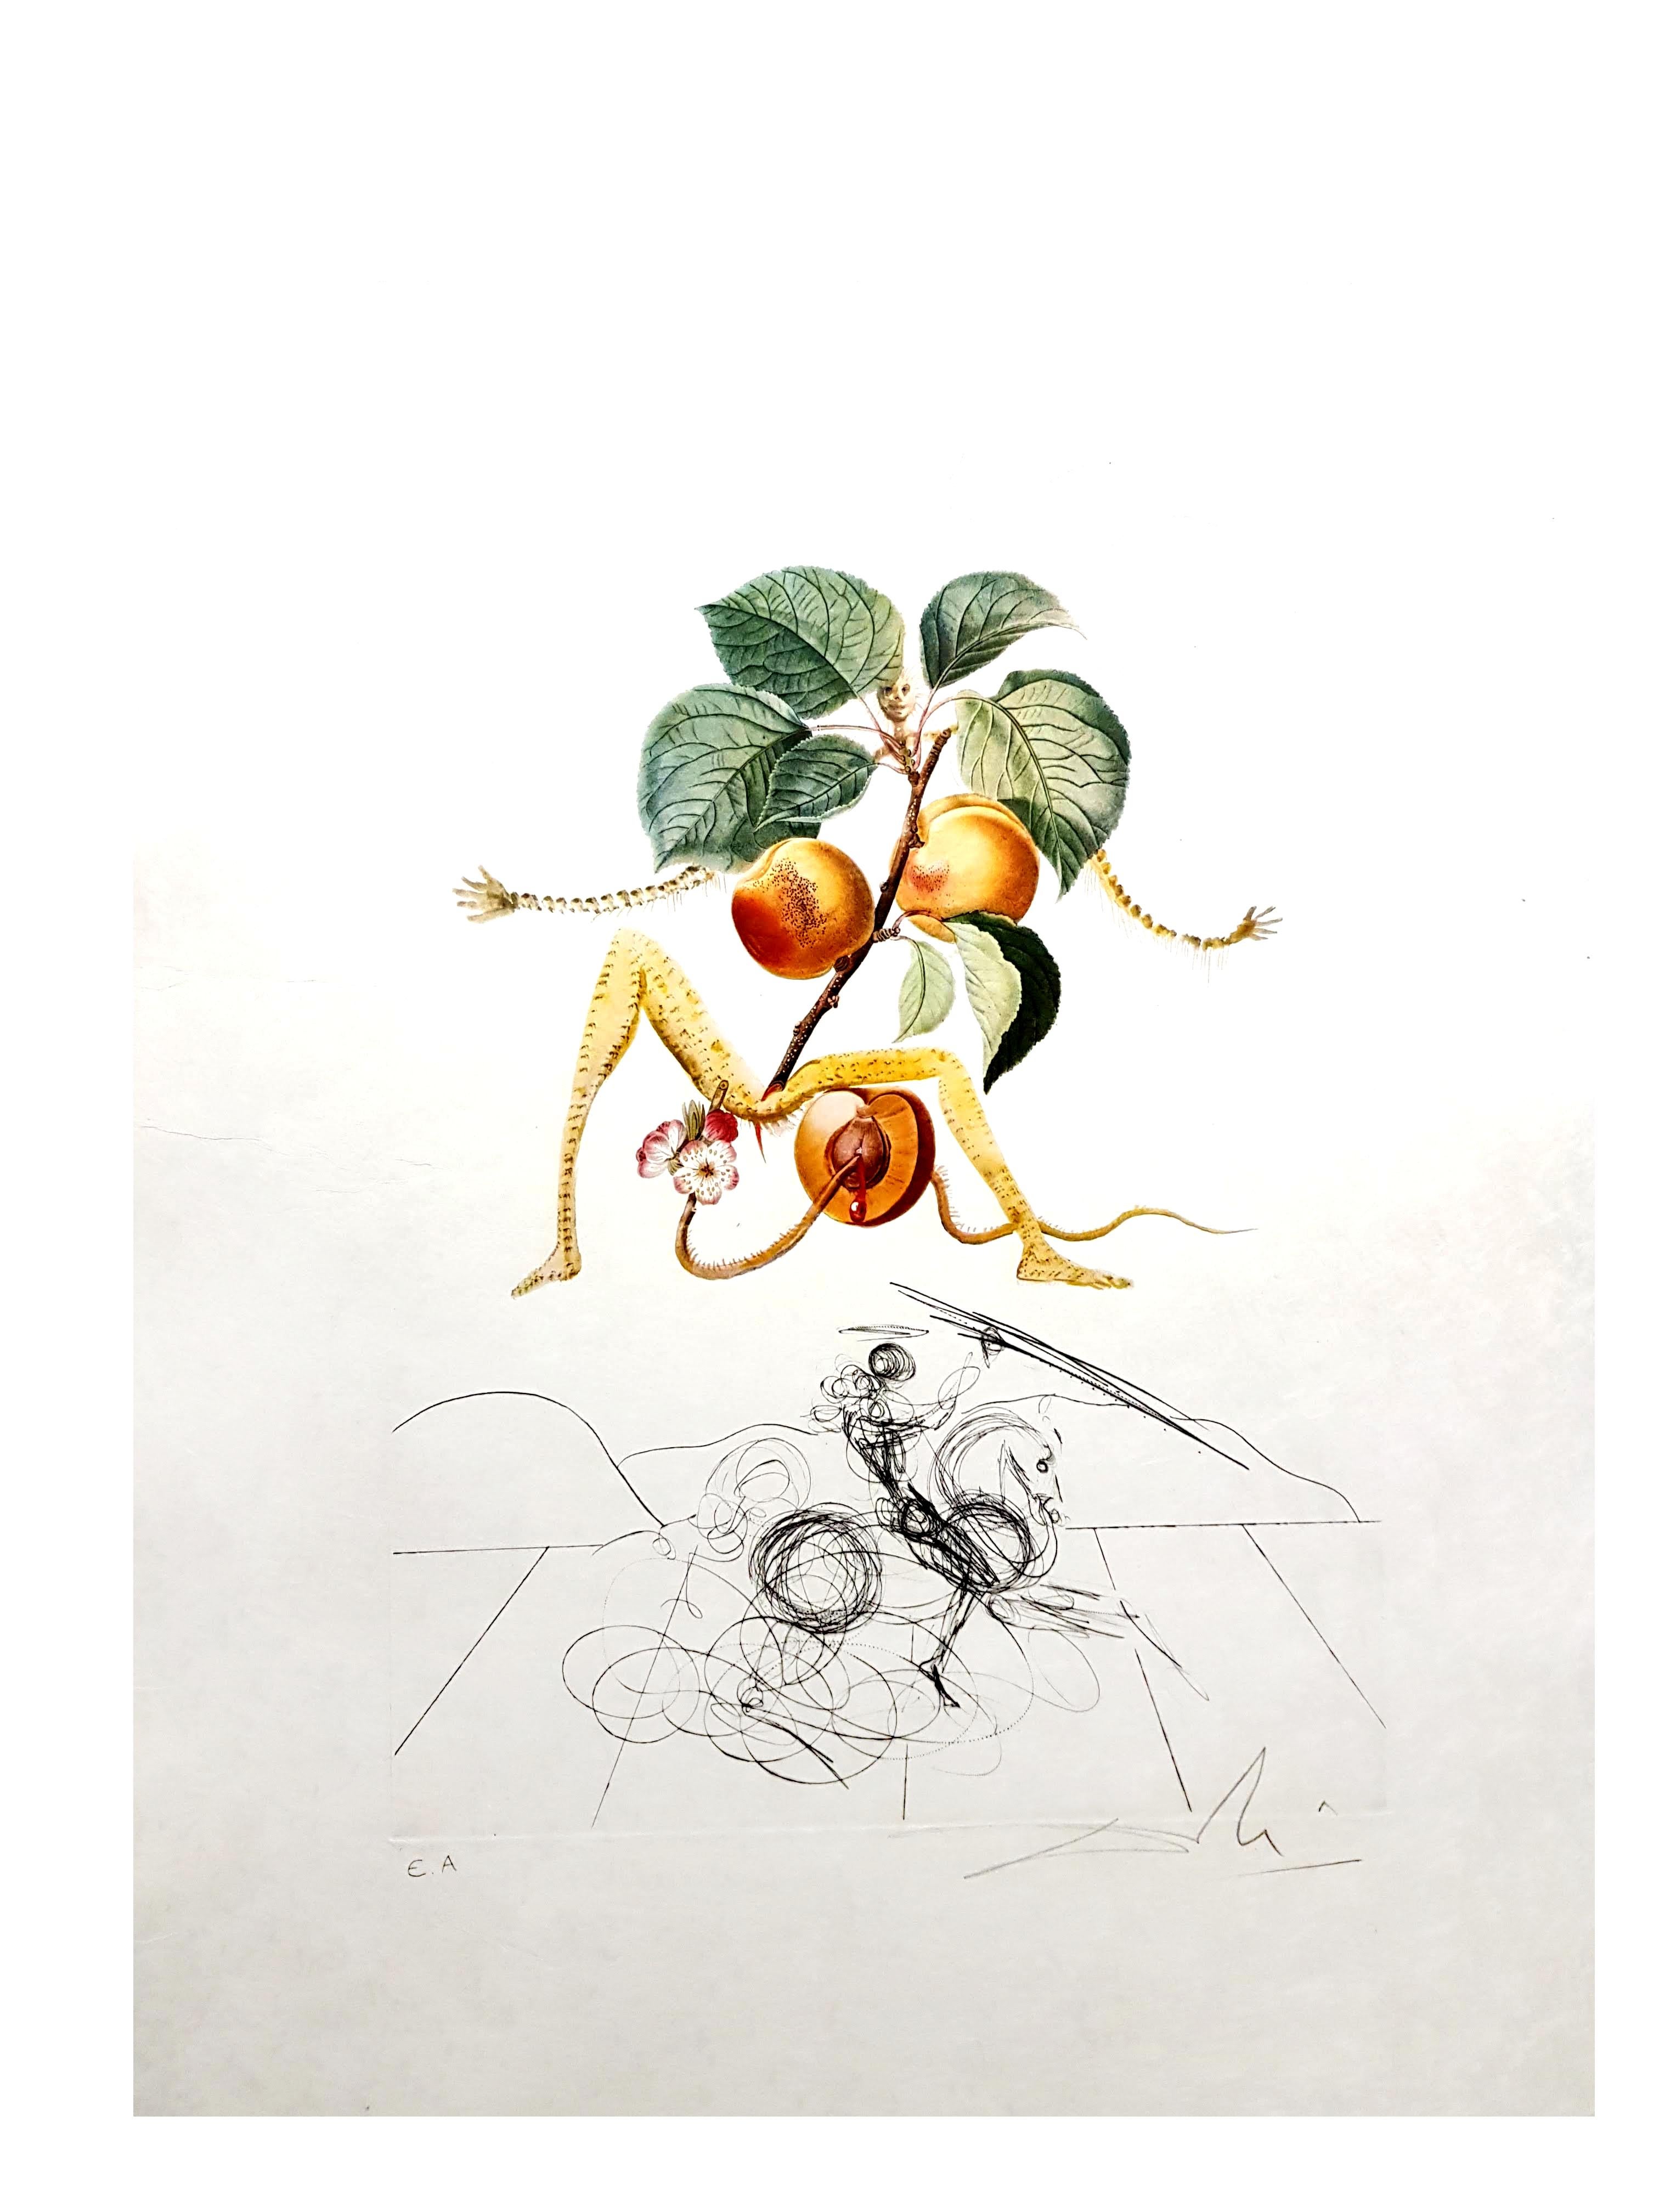 Salvador Dali - Apricot - Original Hand-Signed Lithograph - Print by Salvador Dalí